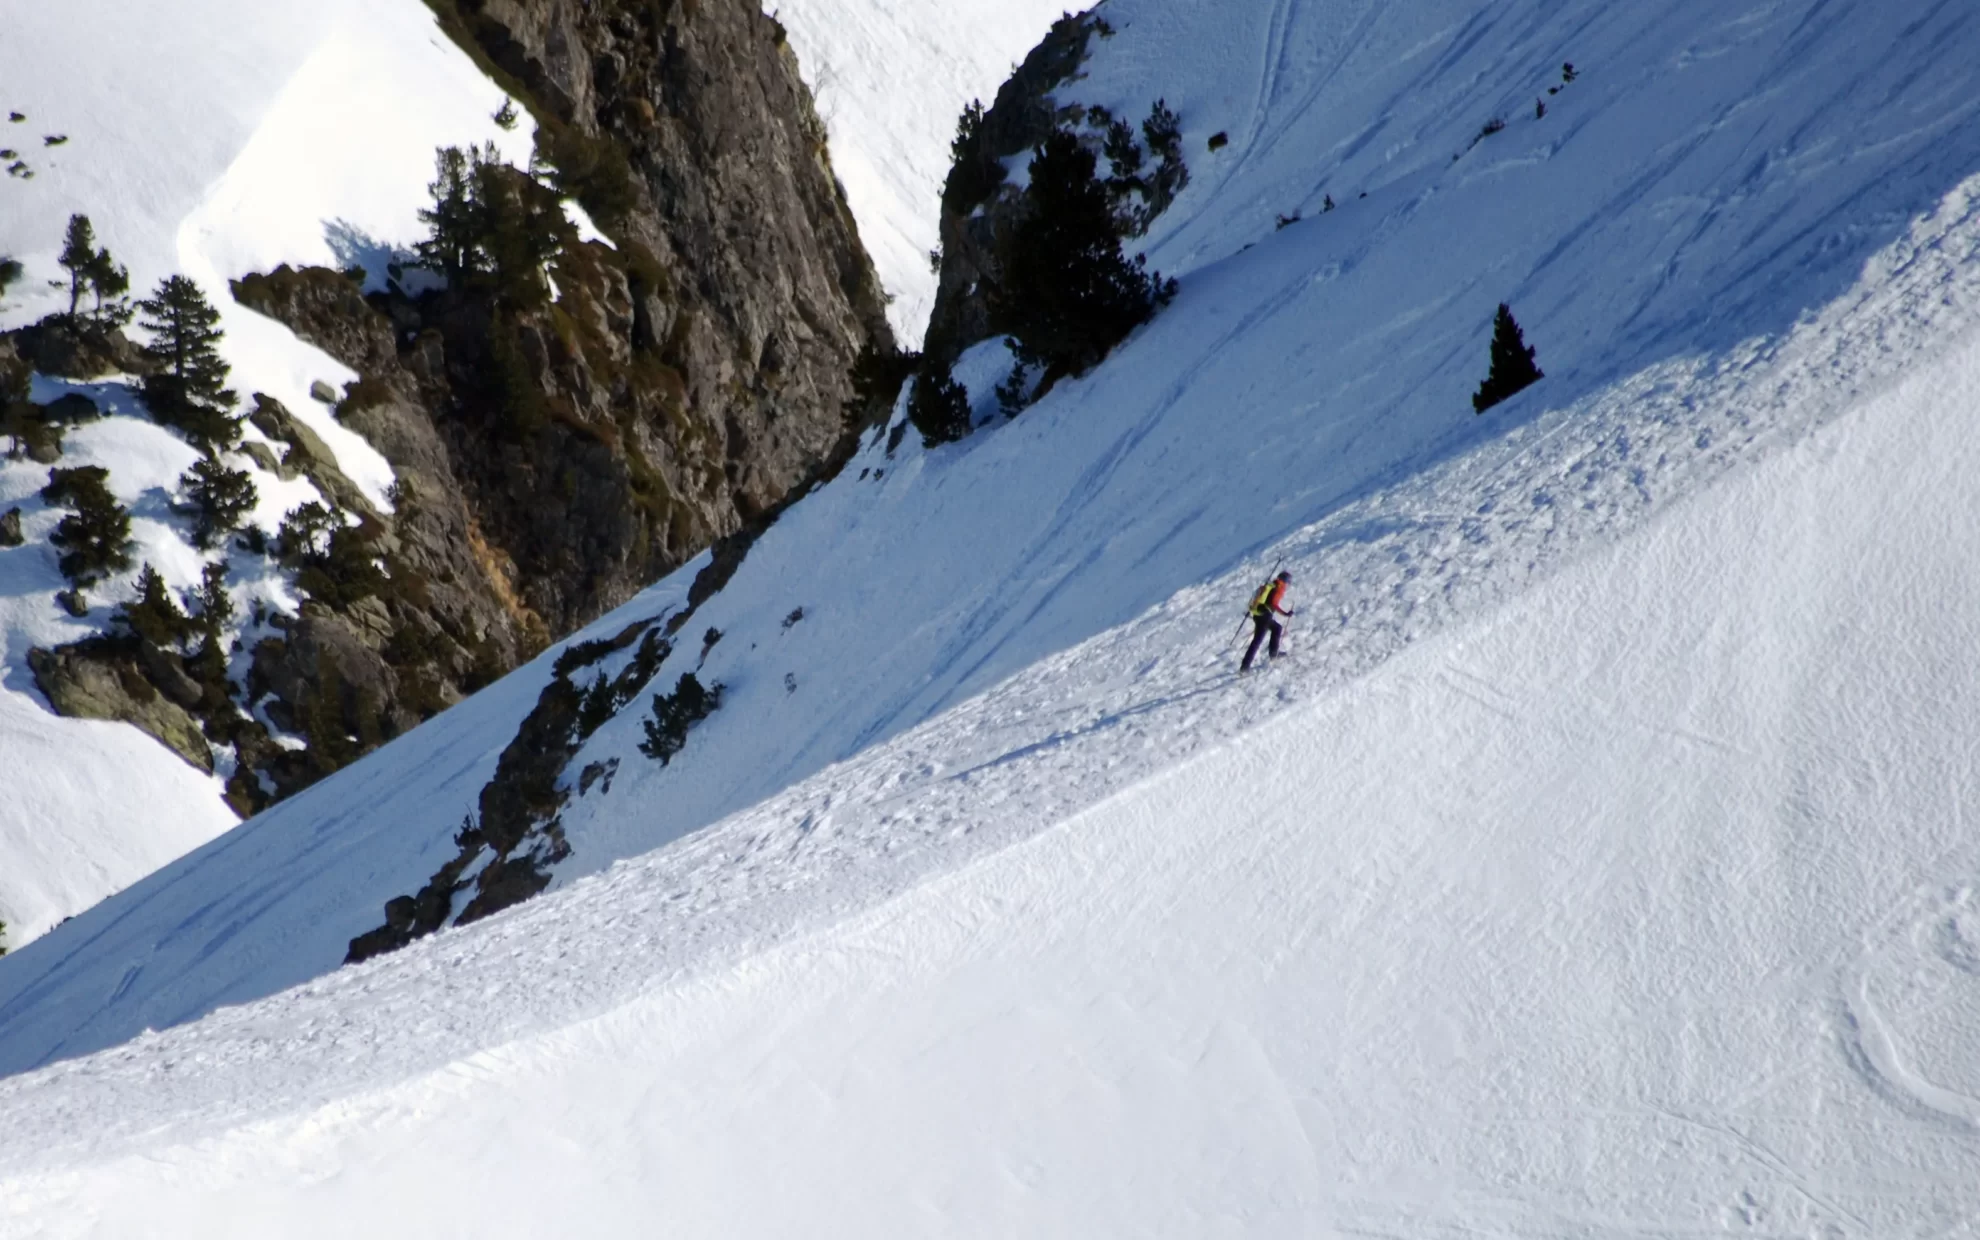 Skieur avec des skis sur le sac à dos en train de remonter une vire neigeuse dans un cadre montagnard et enneigée